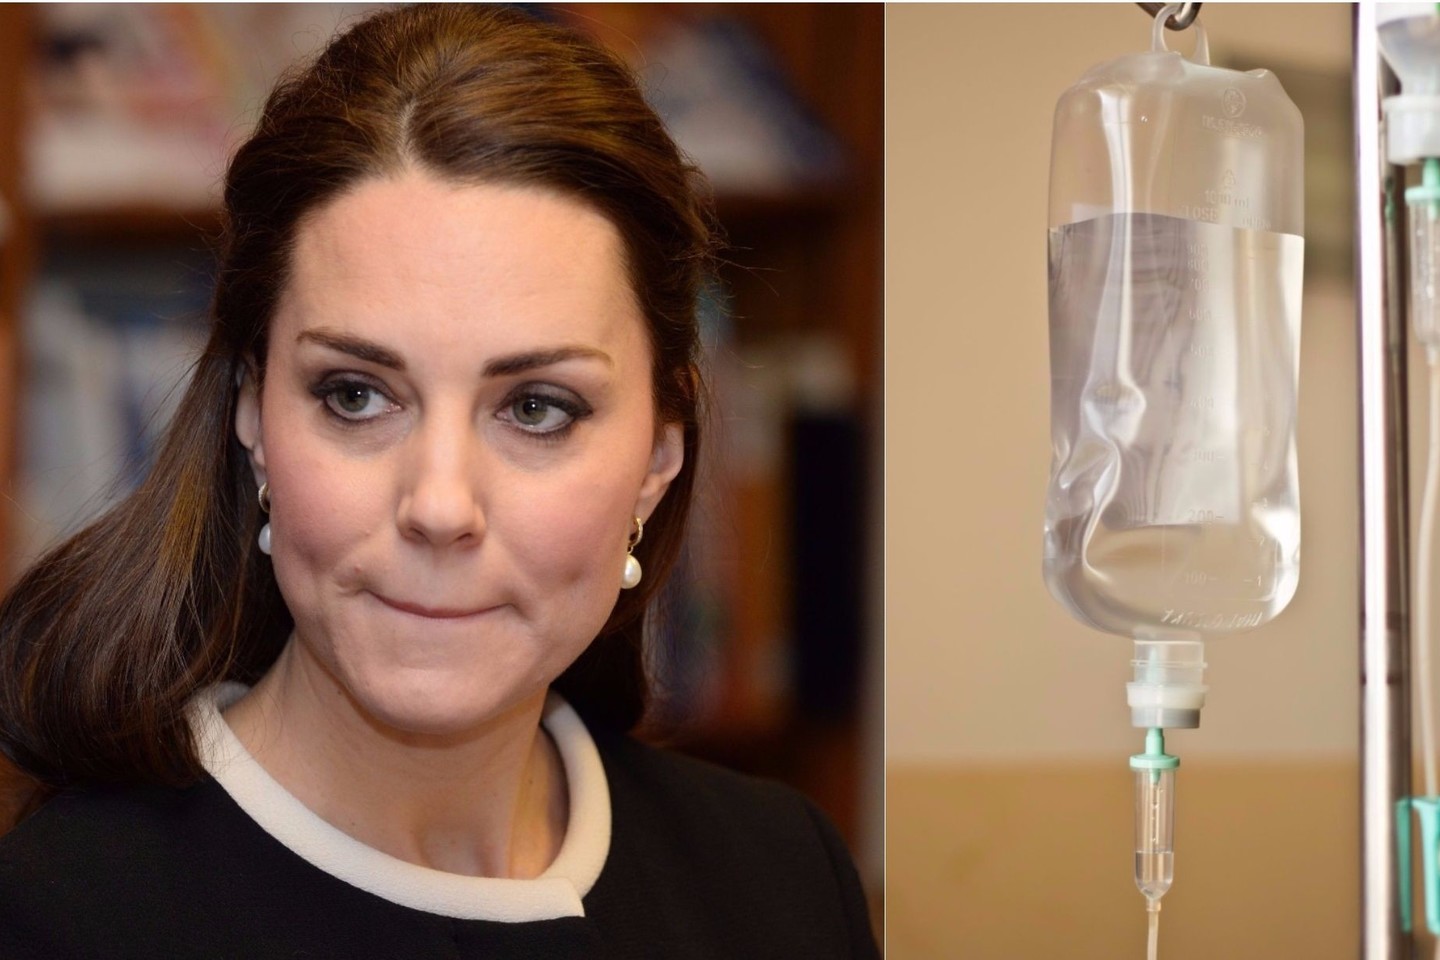  Kunigaikštienė Catherine Middleton laukiasi trečiojo vaiko, tačiau jos sveikatos būklė šiuo metu nepavydėtina.<br> VidaPress ir 123rf.com nuotr.